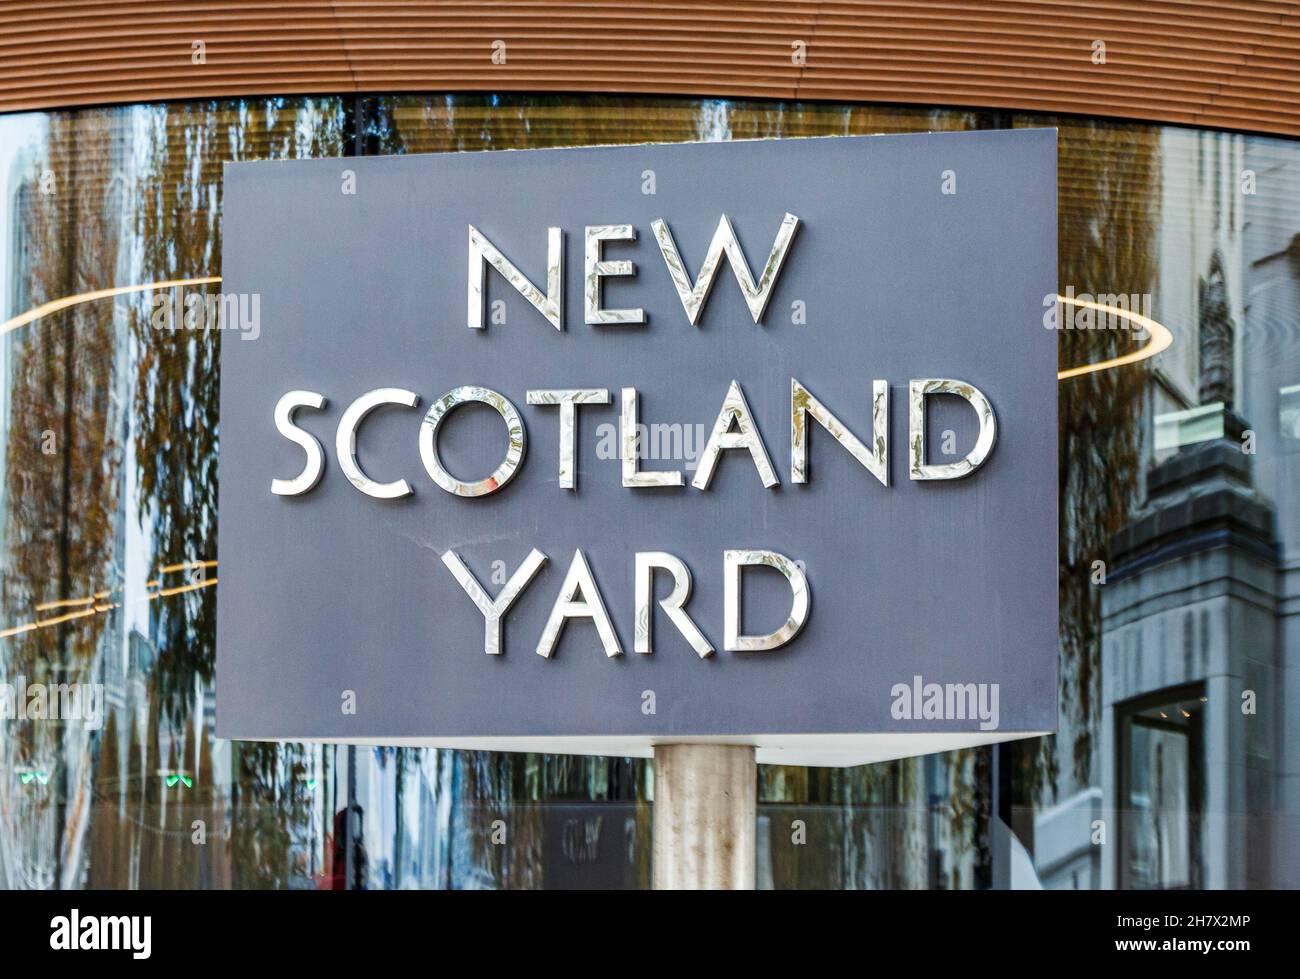 Das ikonische Drehschild vor dem New Scotland Yard, dem Hauptsitz der Metropolitan Police, Victoria Embankment, London, Großbritannien Stockfoto